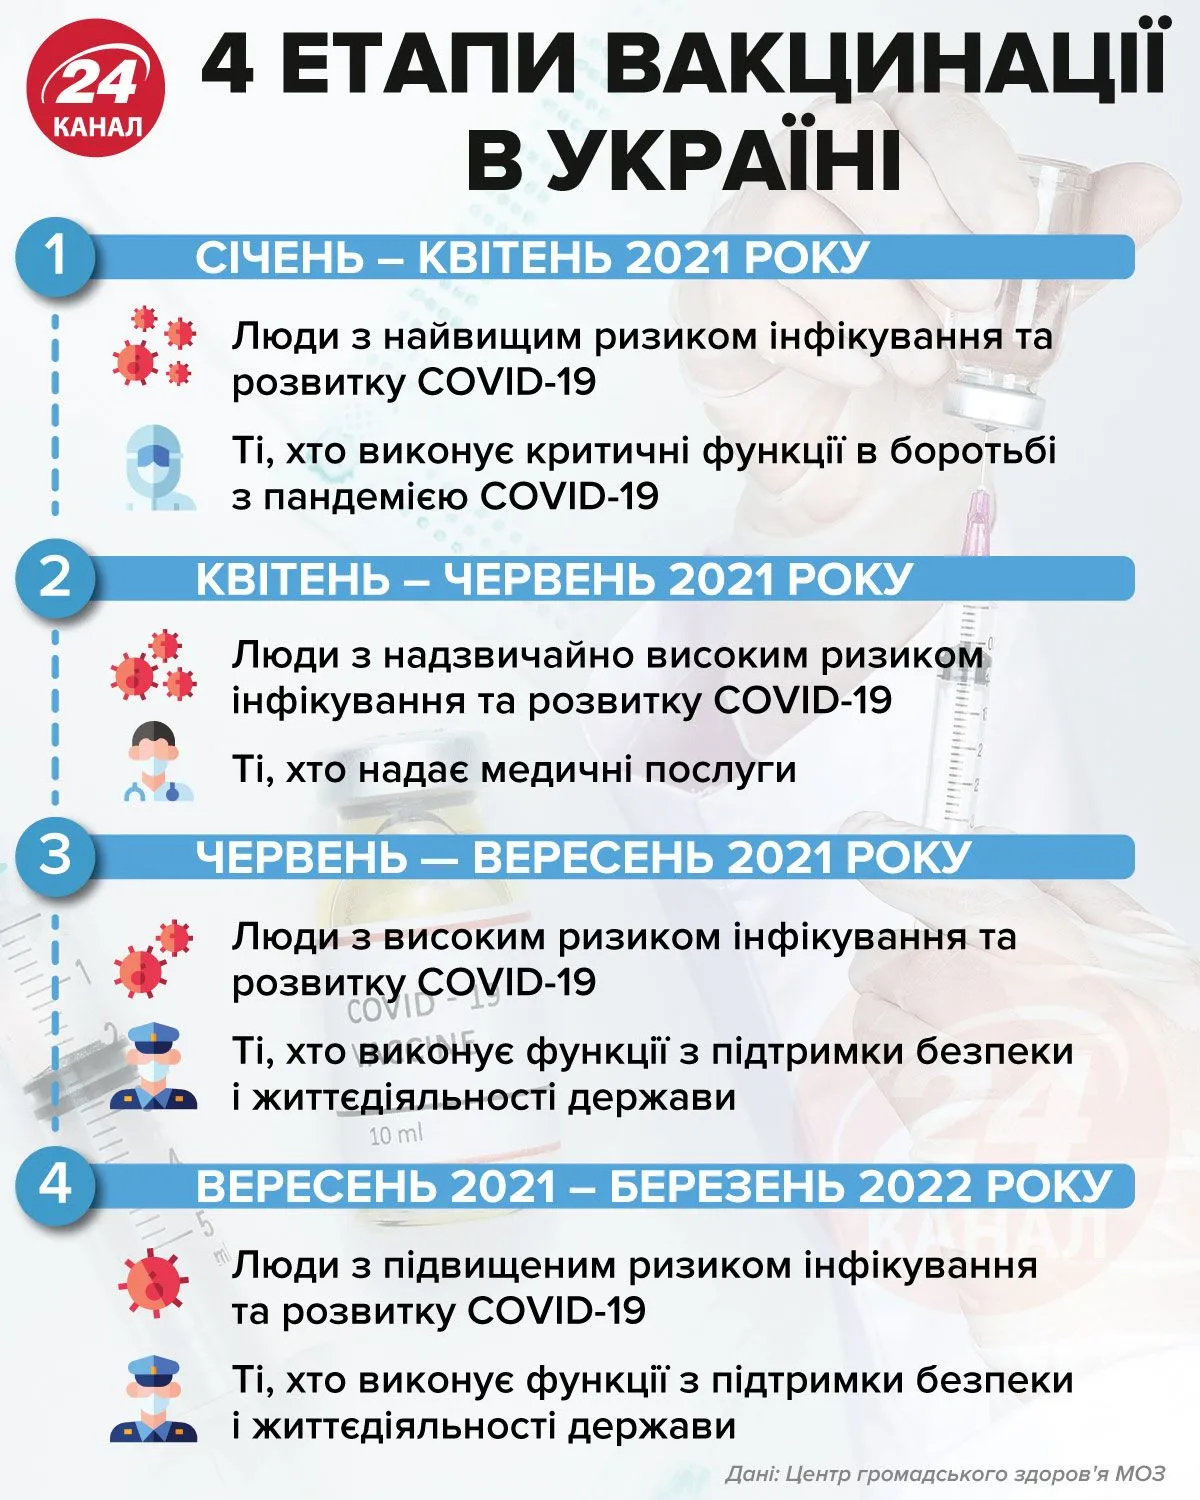 4 этапа вакцинации в Украине  Инфографика 24 канала